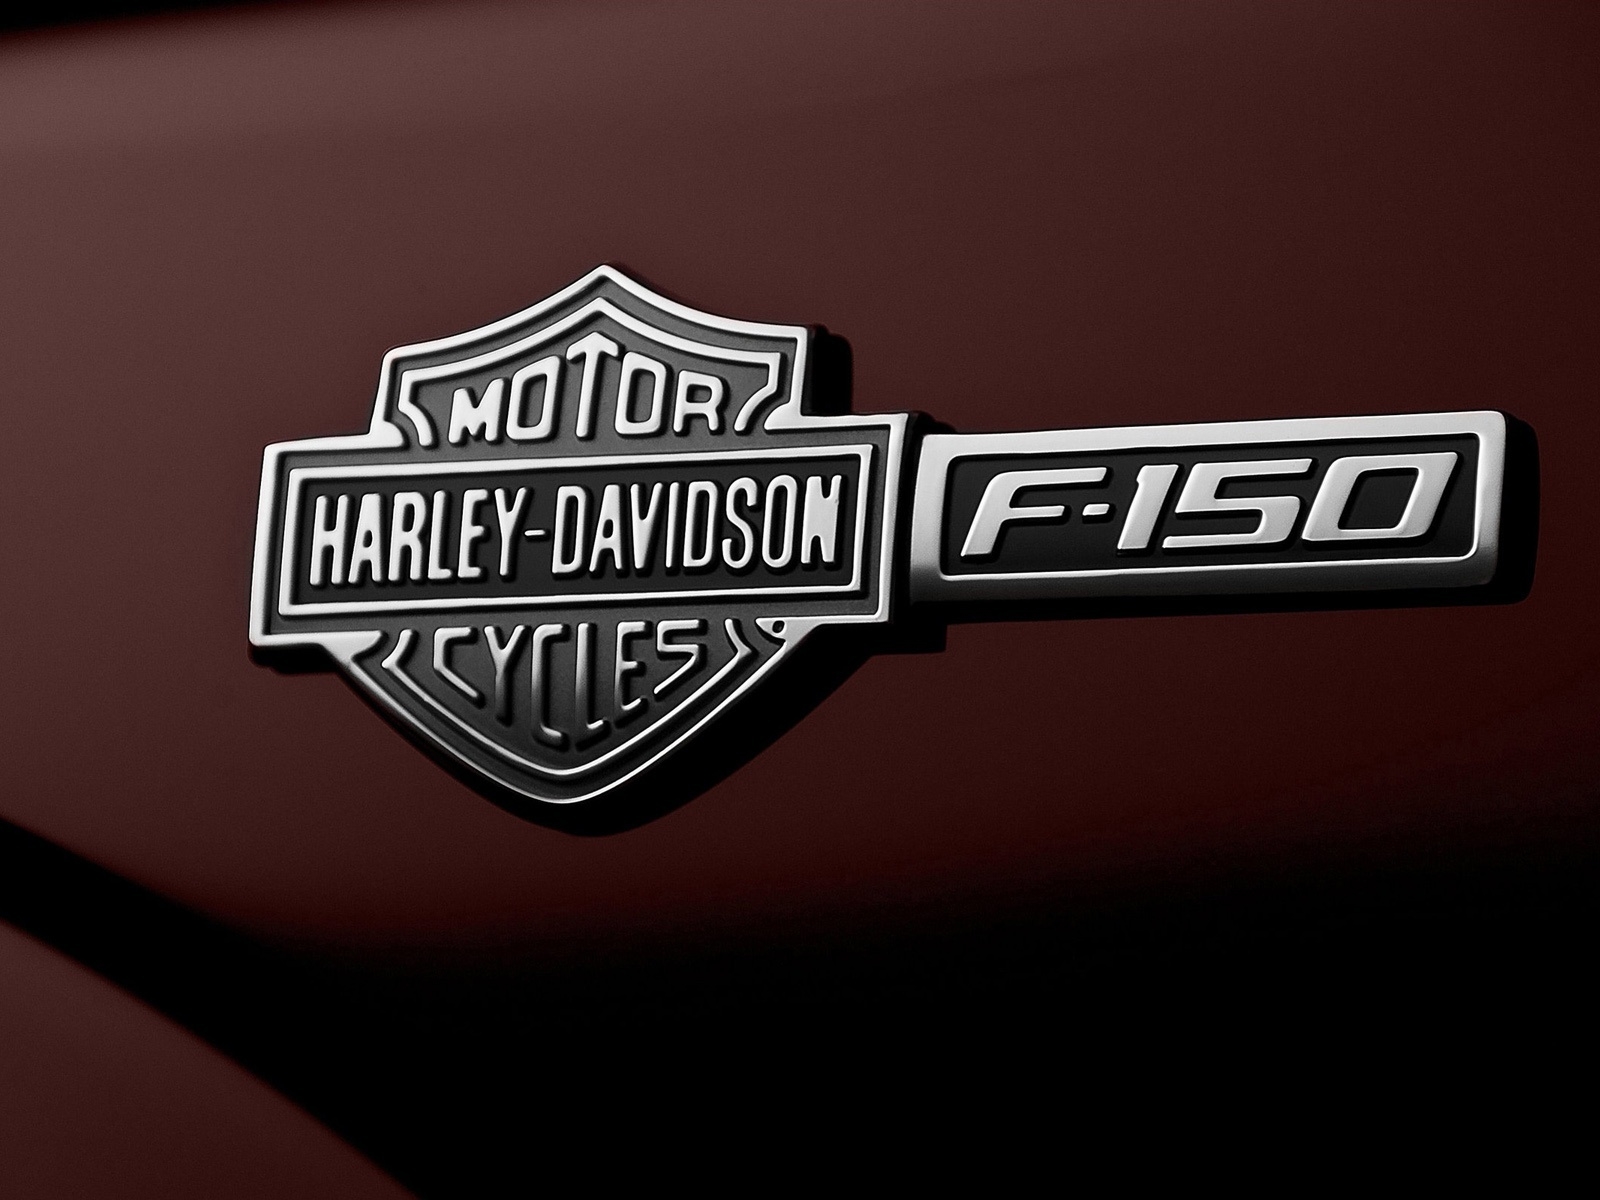 Ford F-150 Harley-Davidson Emblem for 1600 x 1200 resolution